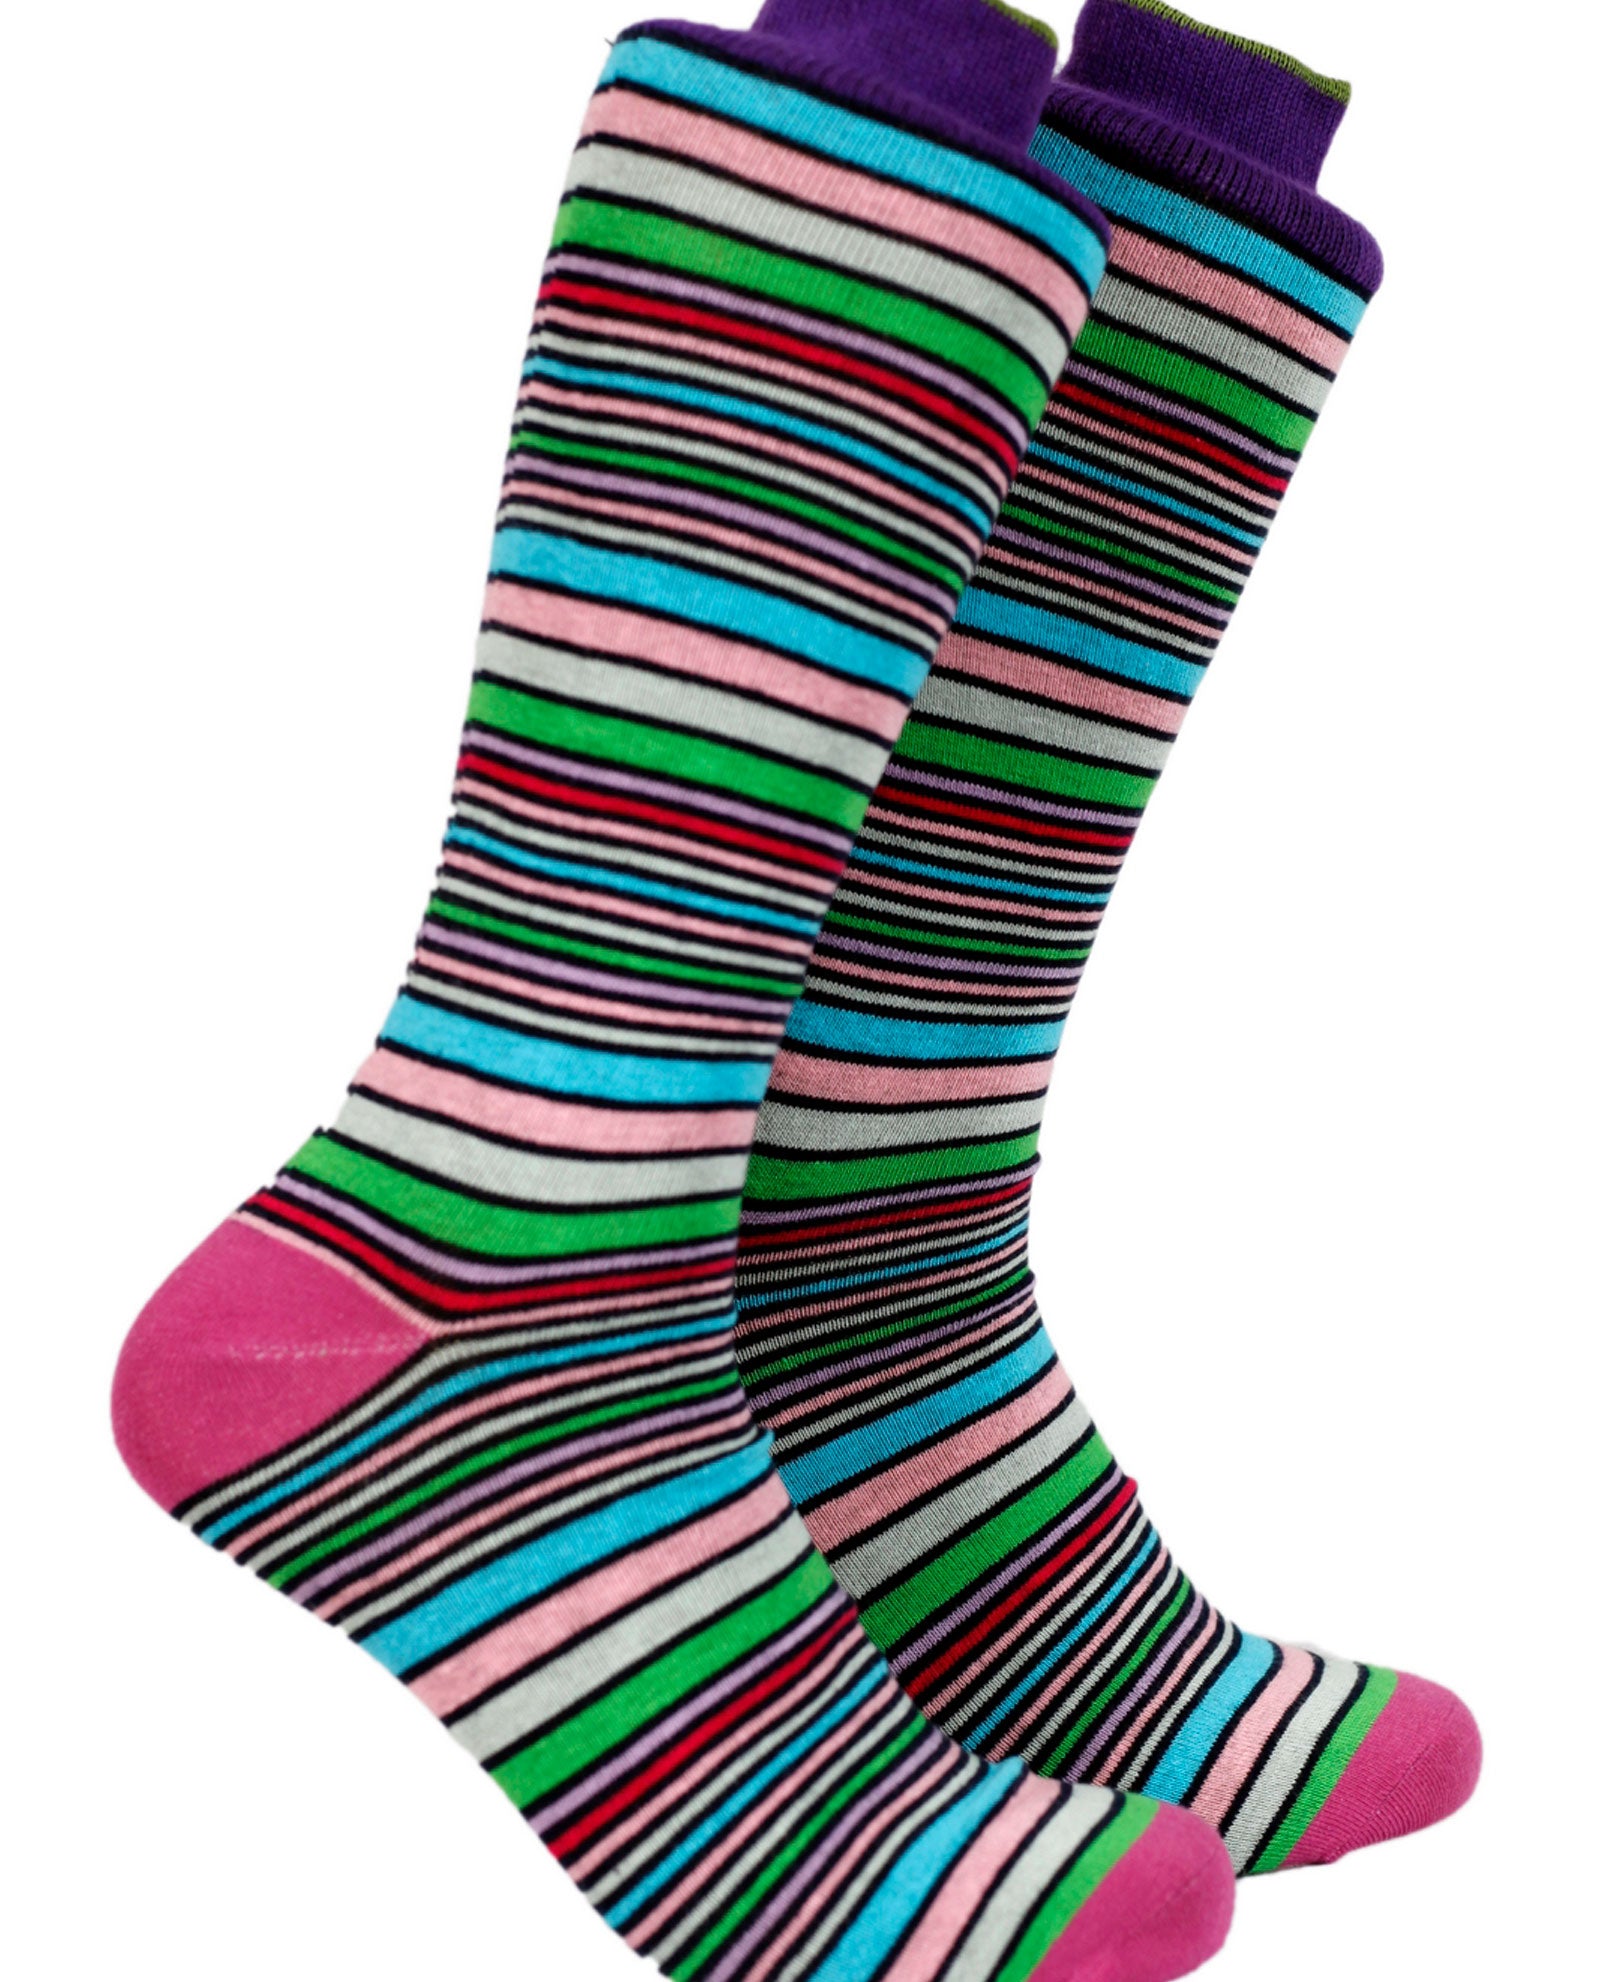 The Sorbet Sock